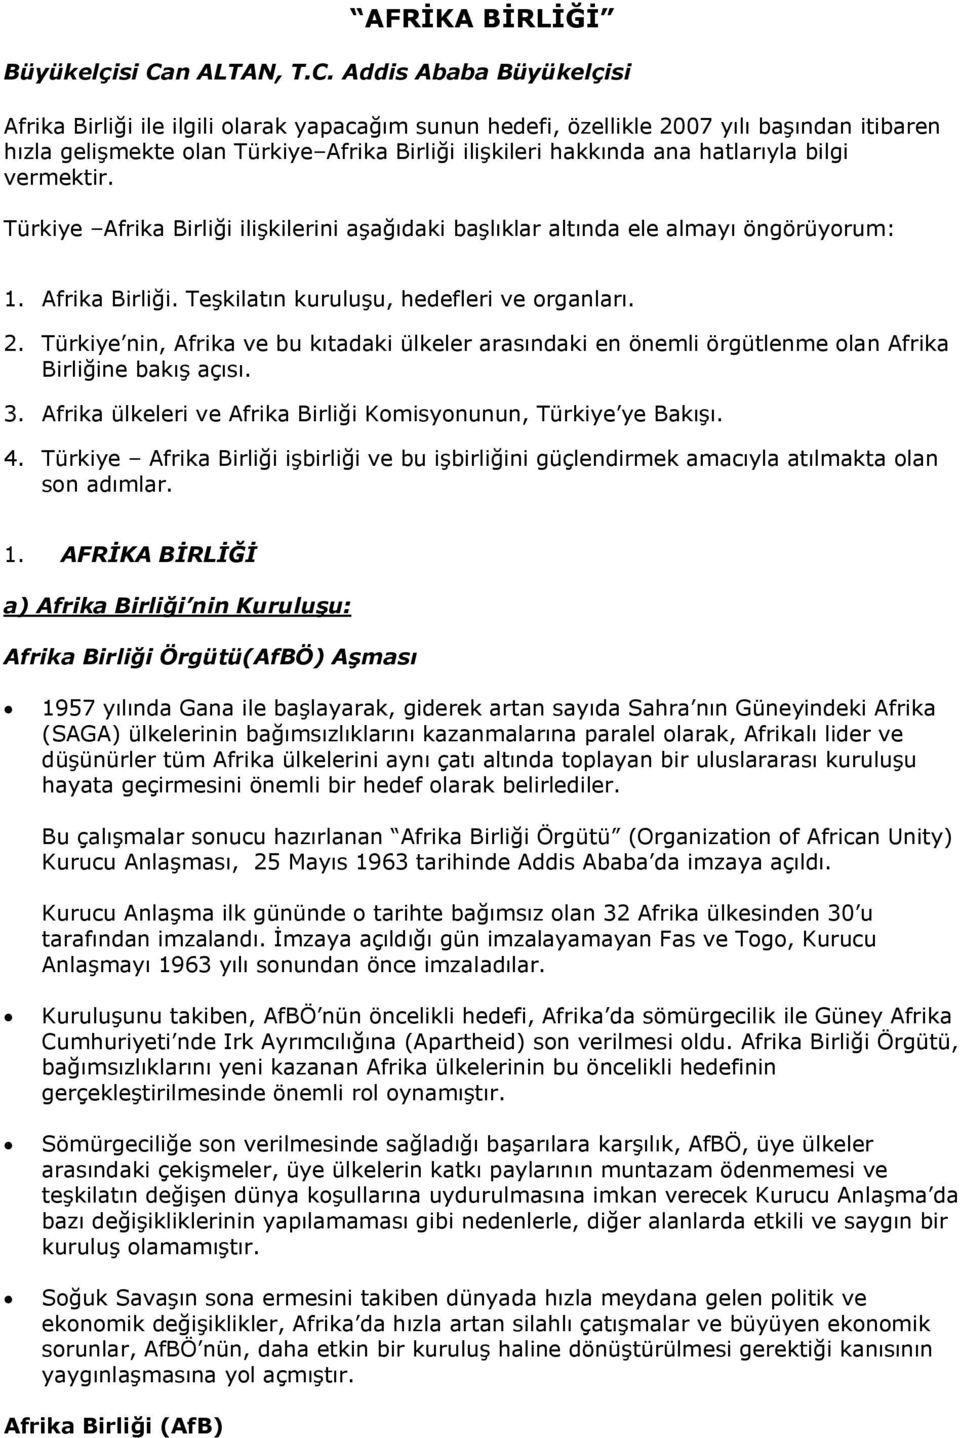 Addis Ababa Büyükelçisi Afrika Birliği ile ilgili olarak yapacağım sunun hedefi, özellikle 2007 yılı başından itibaren hızla gelişmekte olan Türkiye Afrika Birliği ilişkileri hakkında ana hatlarıyla